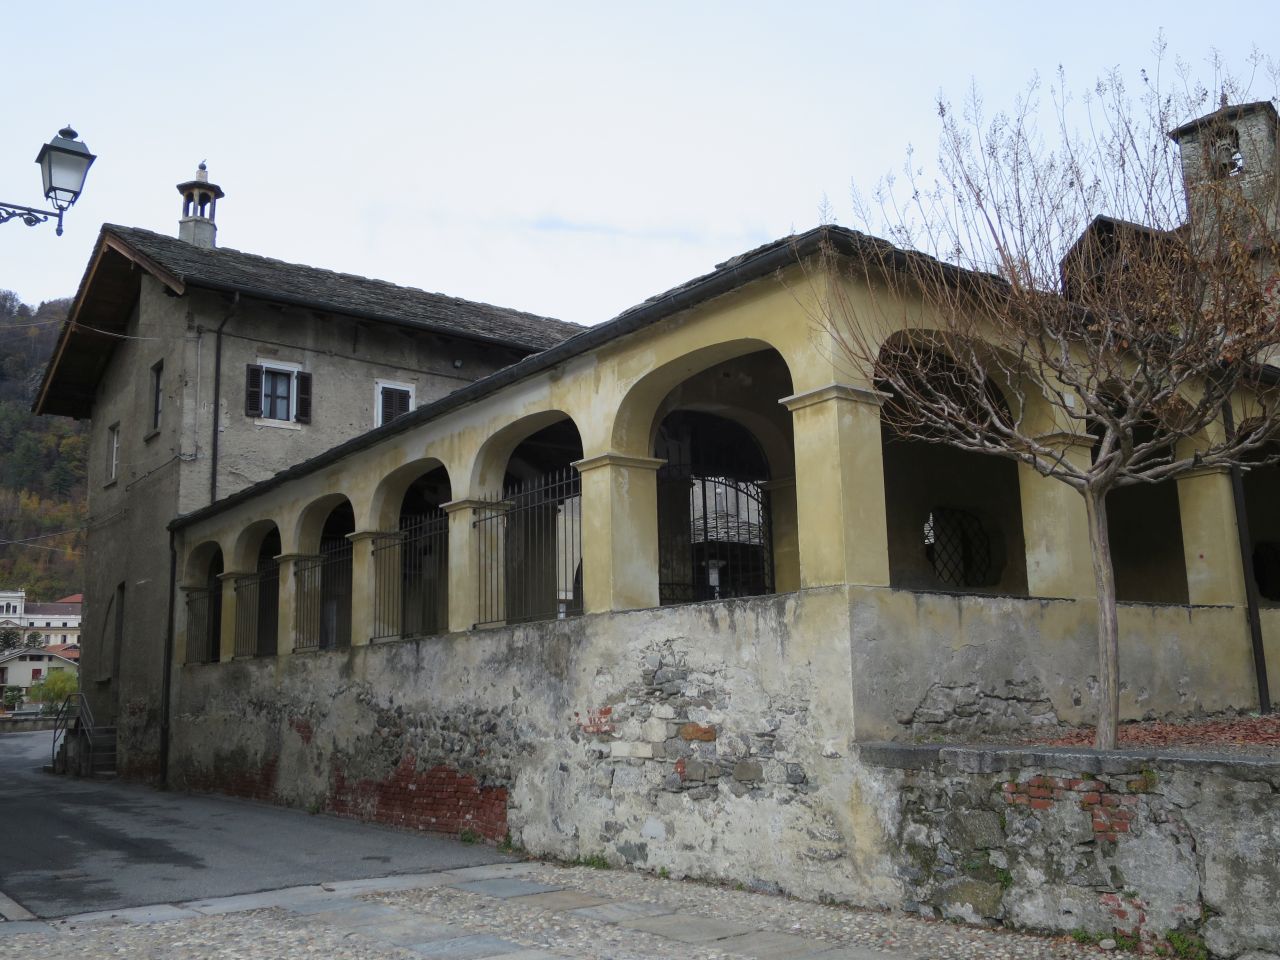 Convento di Santa Maria delle Grazie (convento) - Varallo (VC)  (XV, fine; XIX; XX; XX)